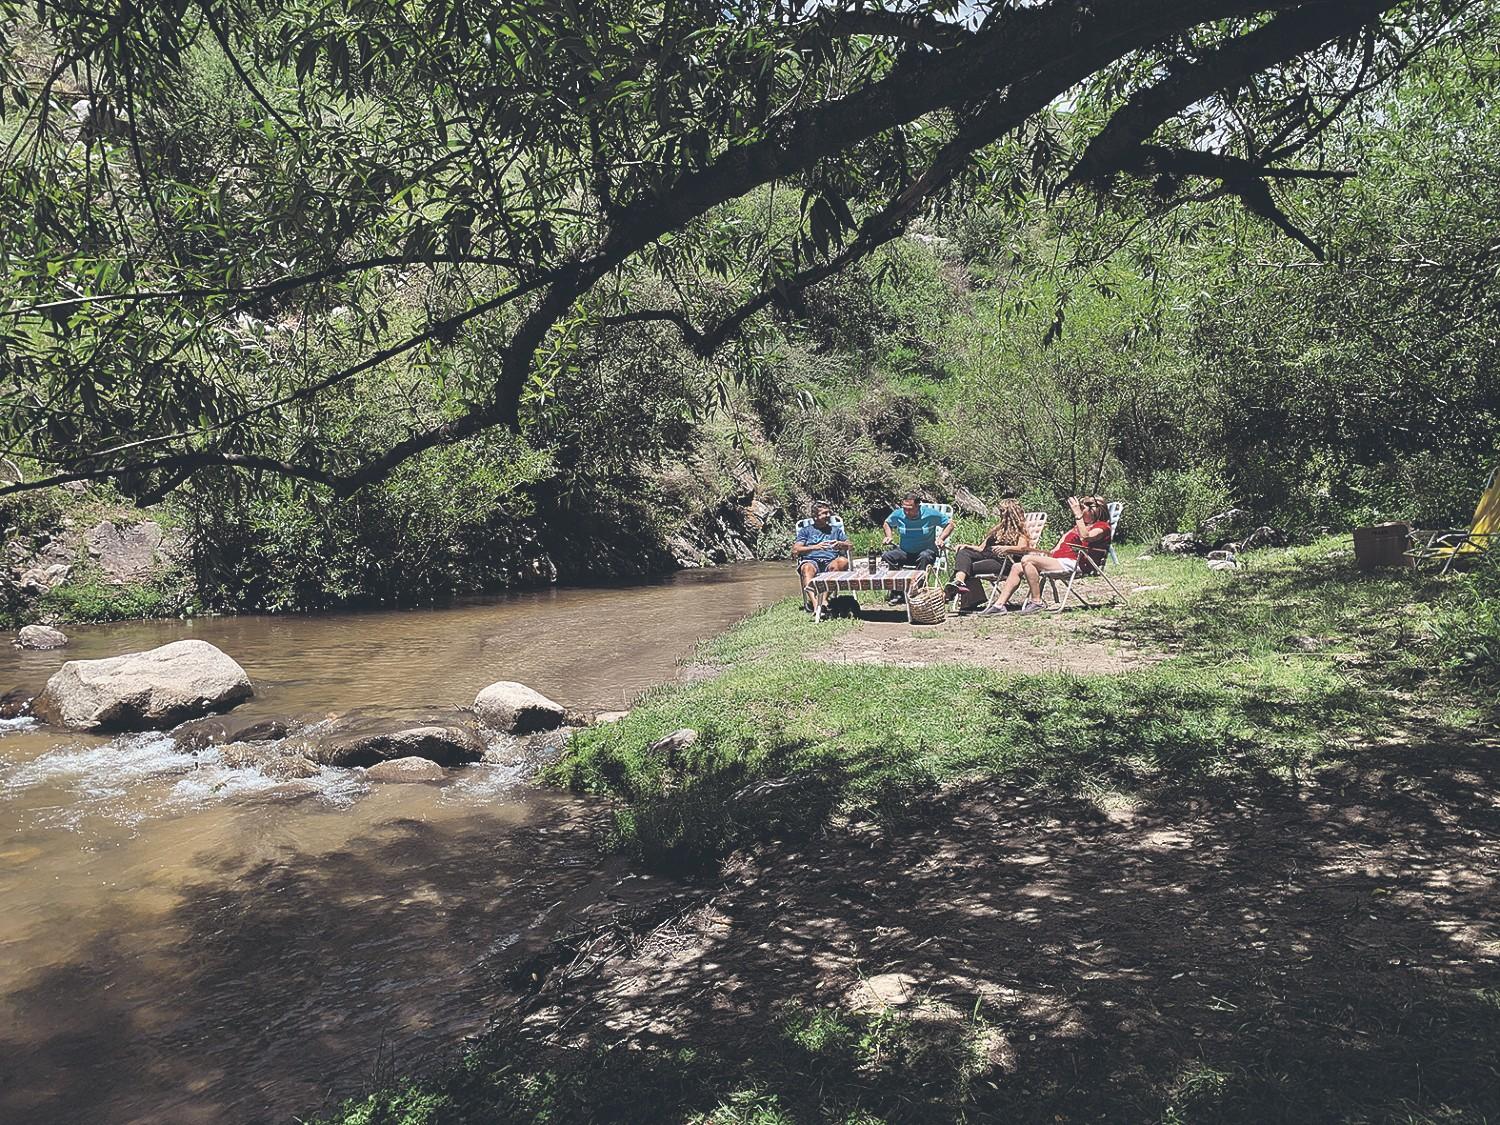 Cuatro ríos recomendados para pasar el día en Tafí del Valle